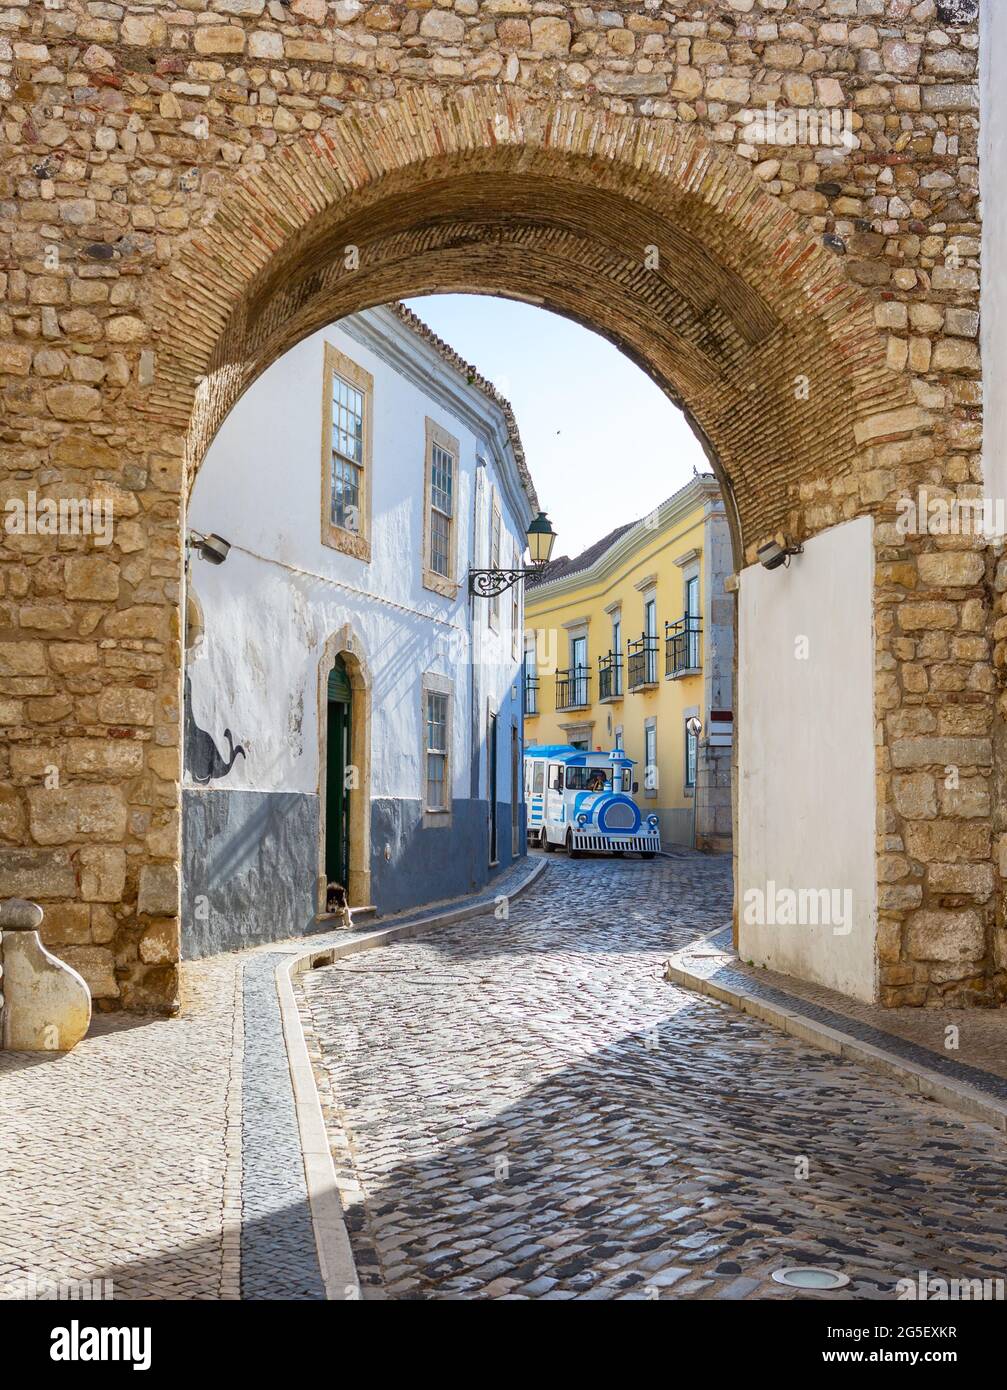 Schmale, gewundene Straße in der historischen Altstadt von Faro, Algarve, Portugal. Sightseeing-Bus im Hintergrund. Stockfoto